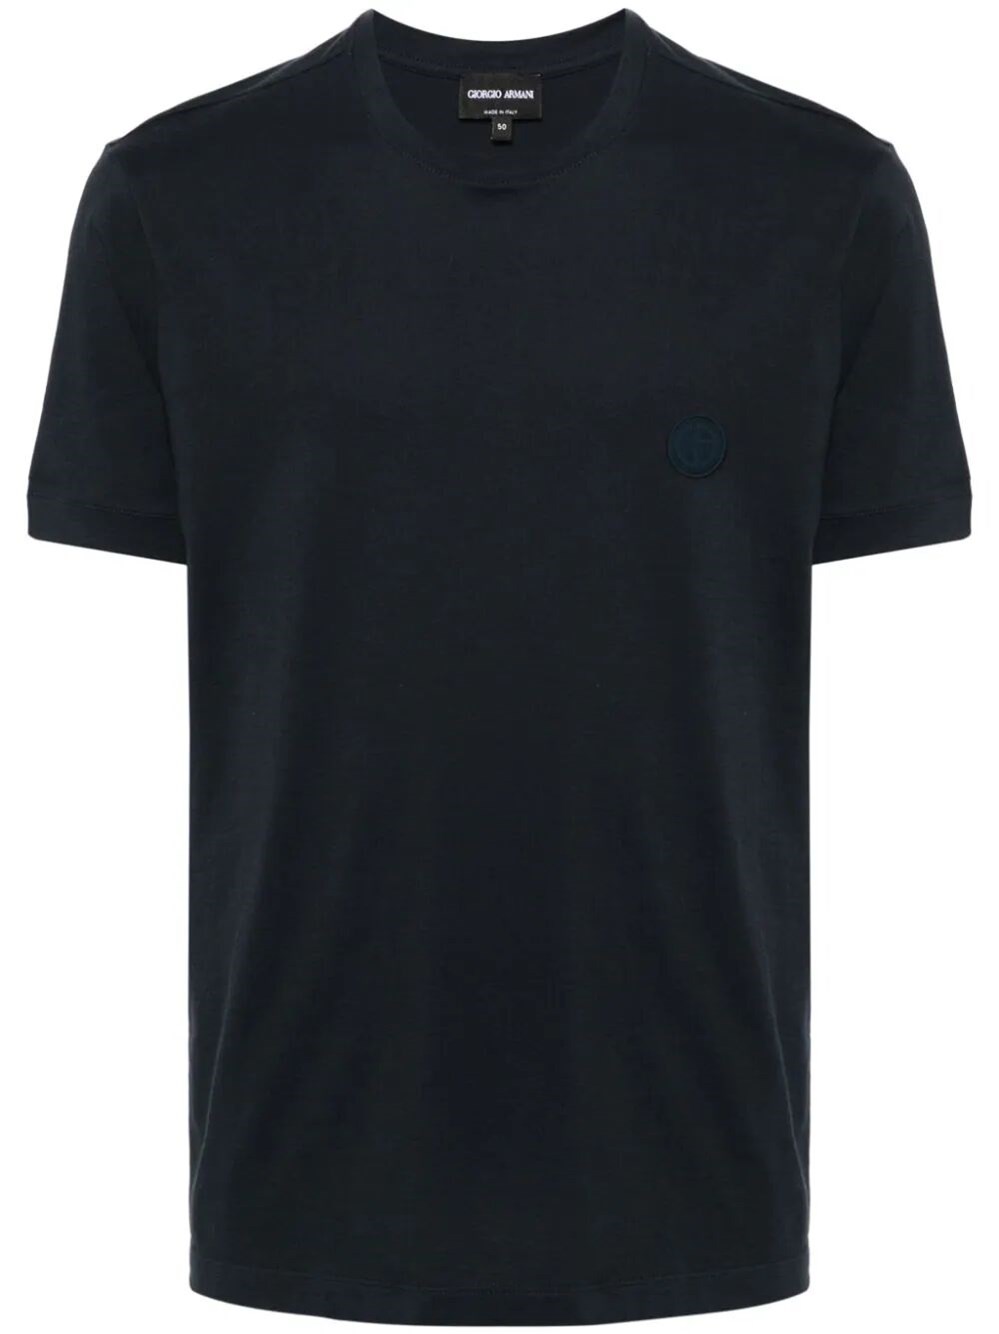 Giorgio Armani Jersey T-shirt In Black